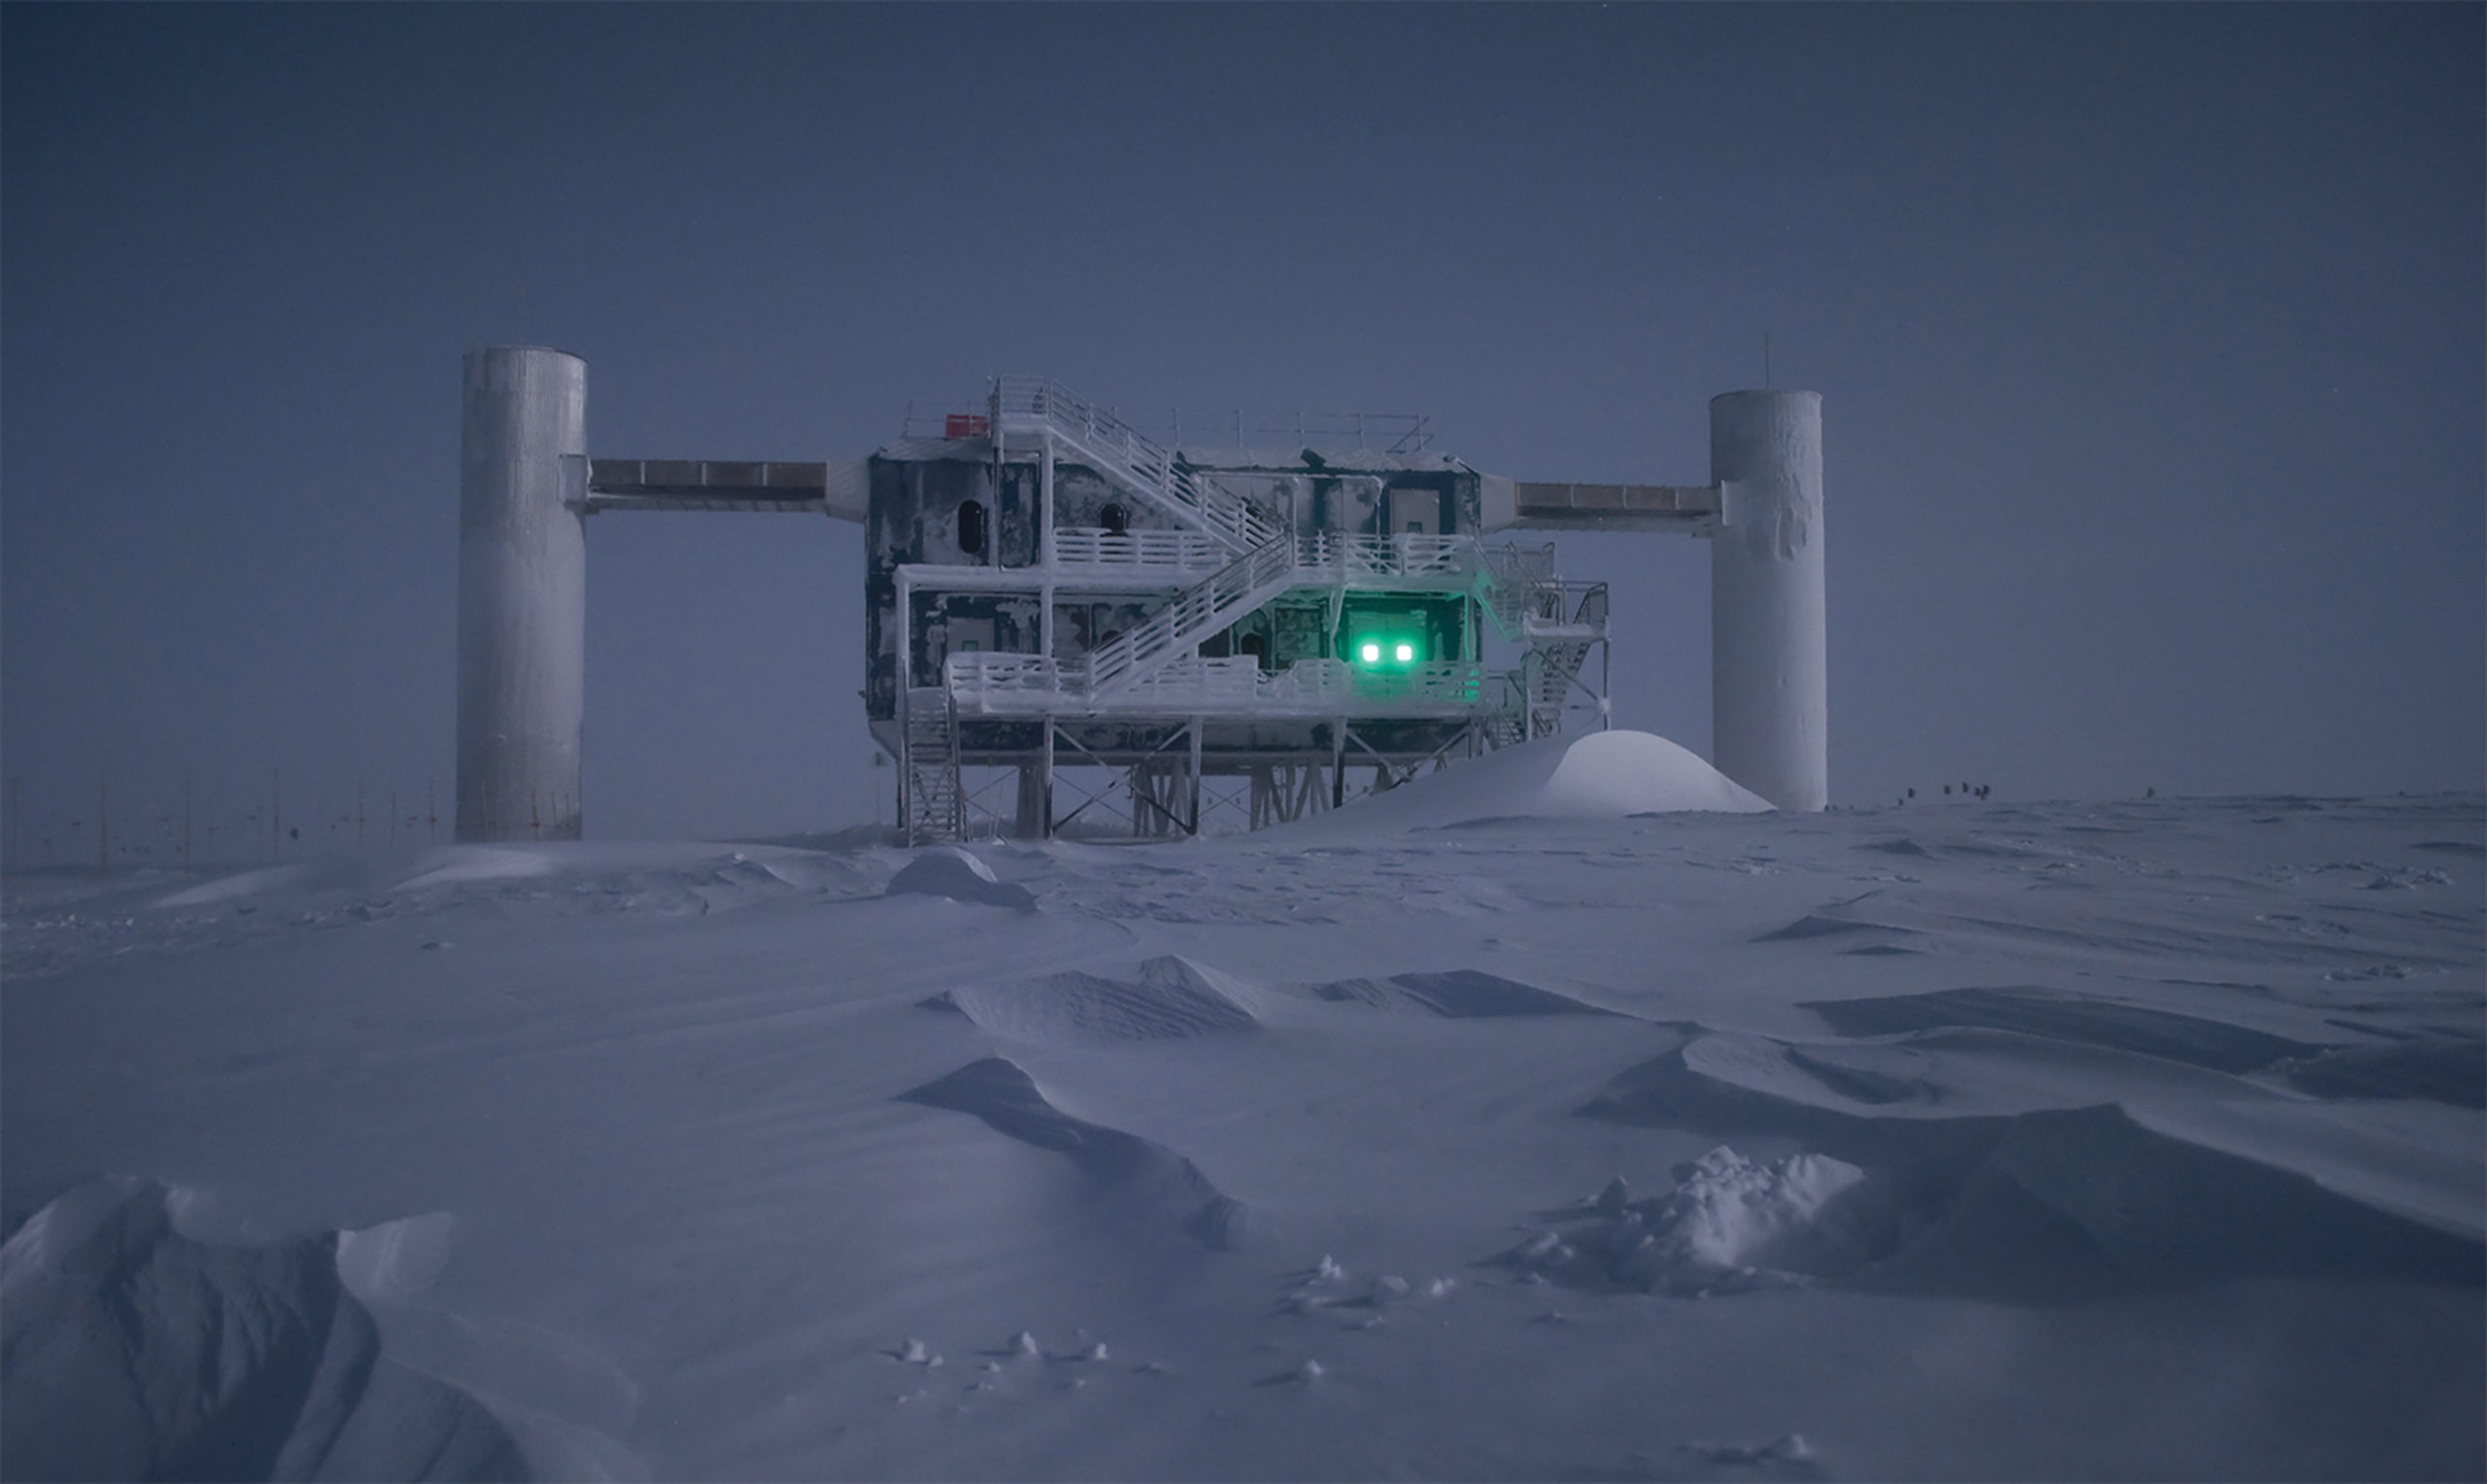 Антарктический научно исследовательский. Станция Амундсен Скотт в Антарктиде. Нейтринная обсерватория icecube. Нейтринная обсерватория ледяной куб, Антарктида. Антарктическая станция принцесса Элизабет.